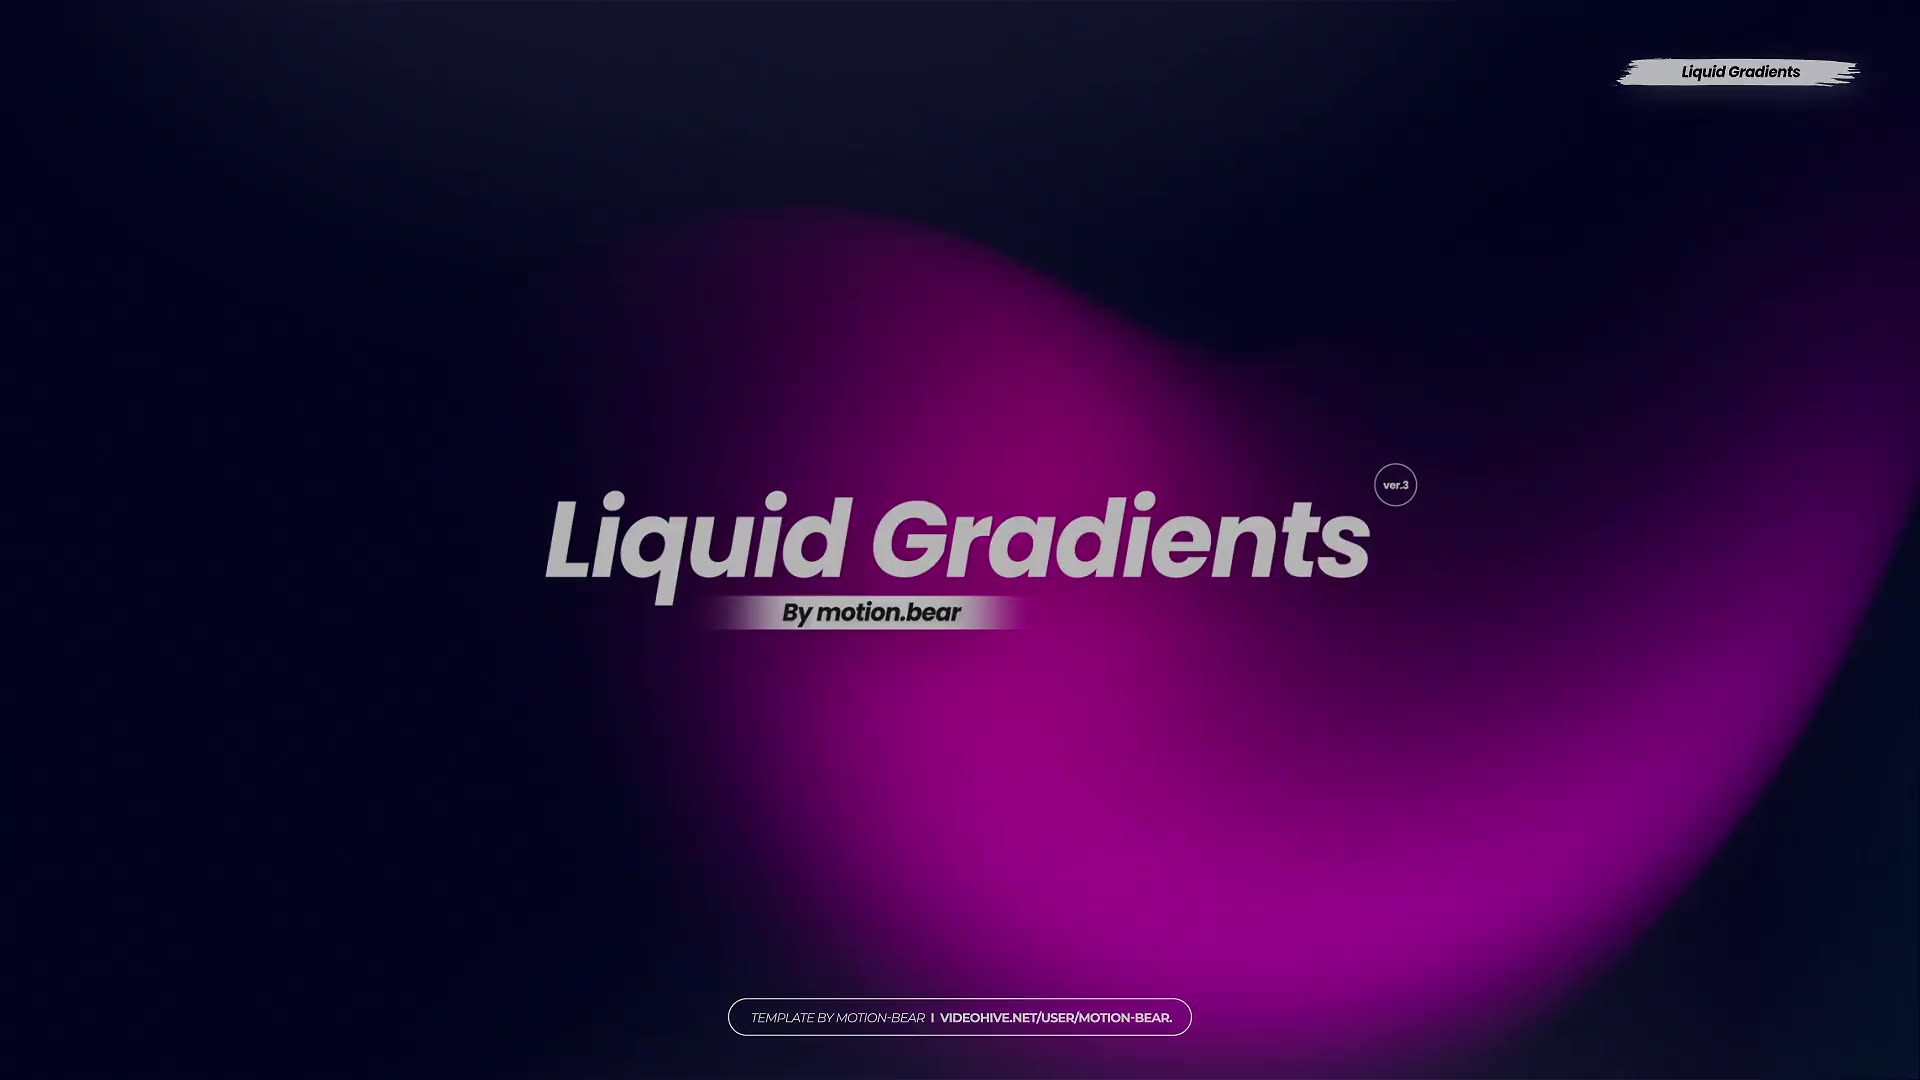 Liquid Gradients Pack 02 Premiere Pro Videohive 39744703 Premiere Pro Image 11